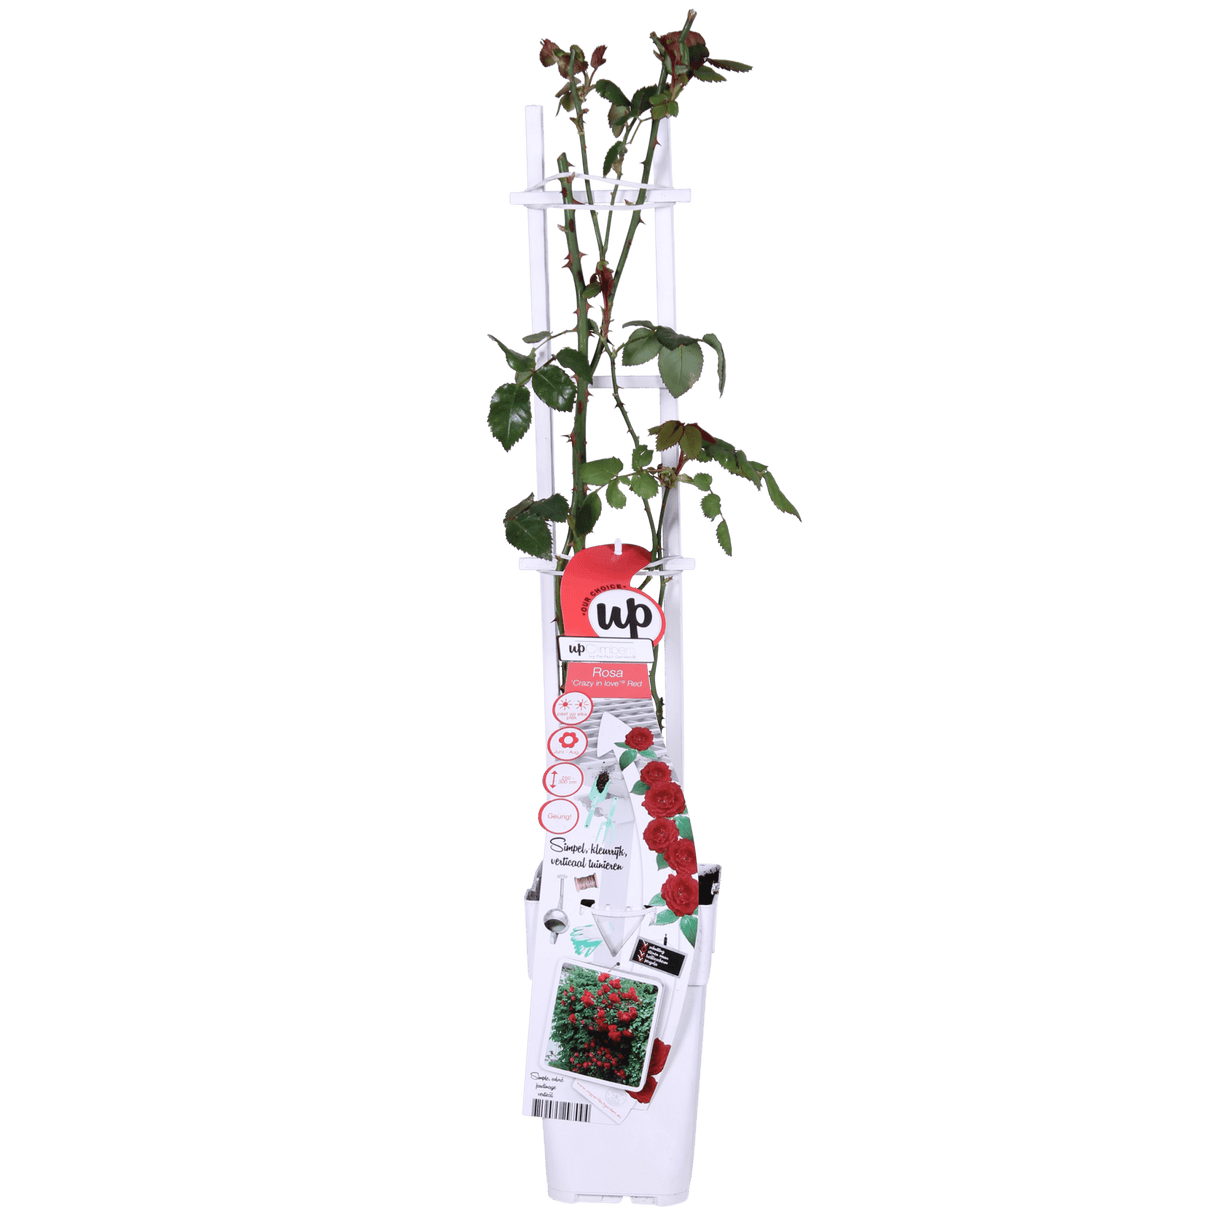 Livraison plante - Rosier rouge - ↨65cm - Ø15 - arbuste fleuri